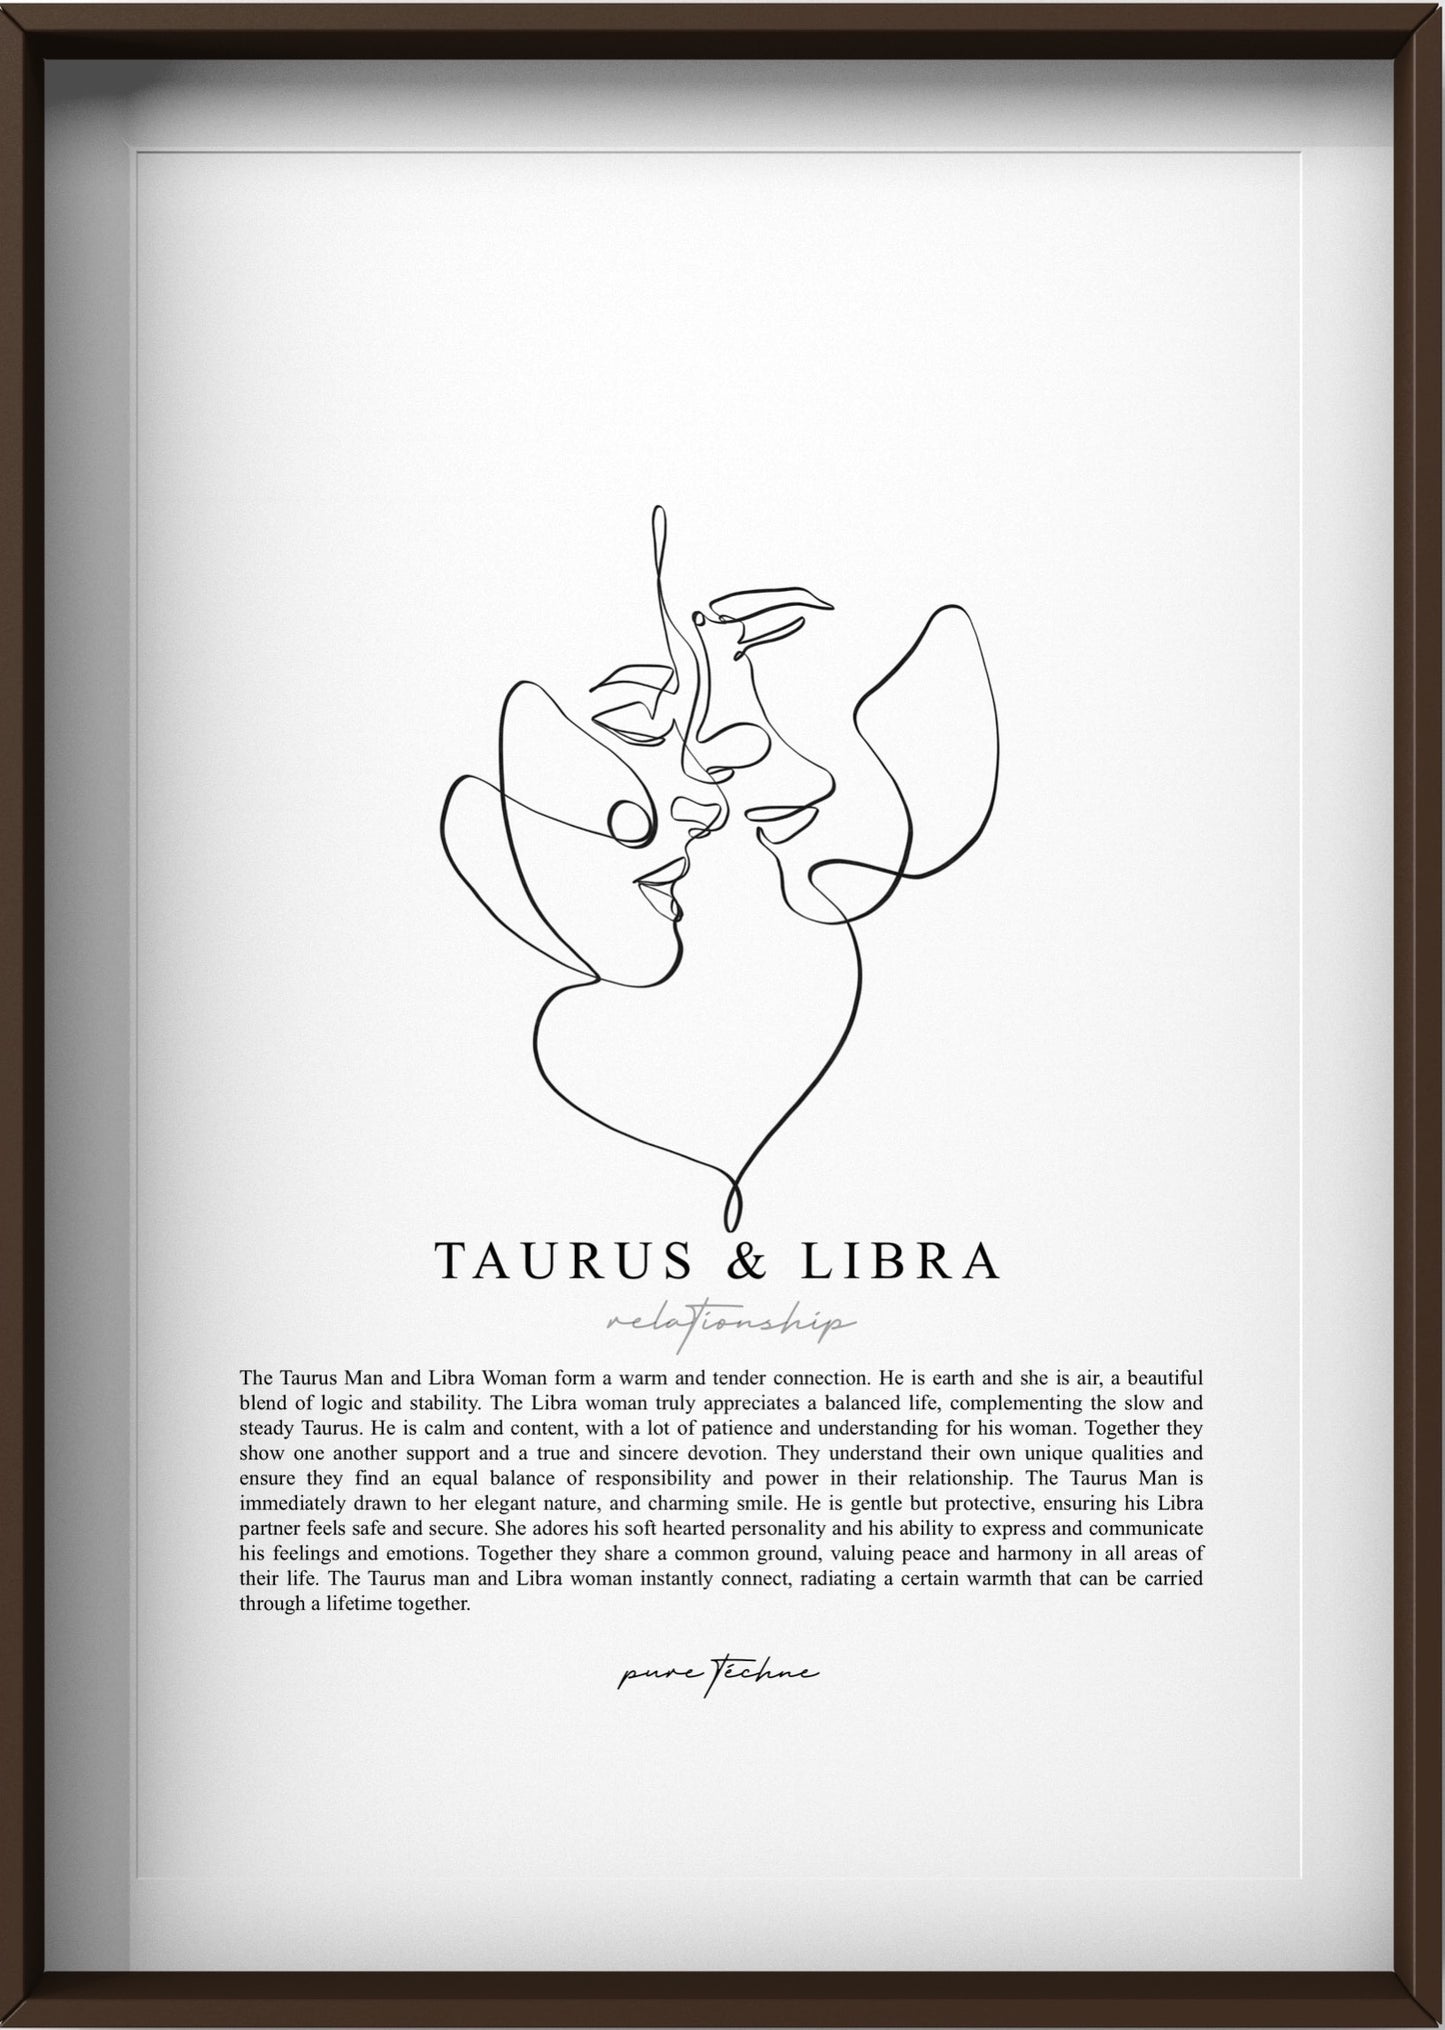 Taurus Man & Libra Woman